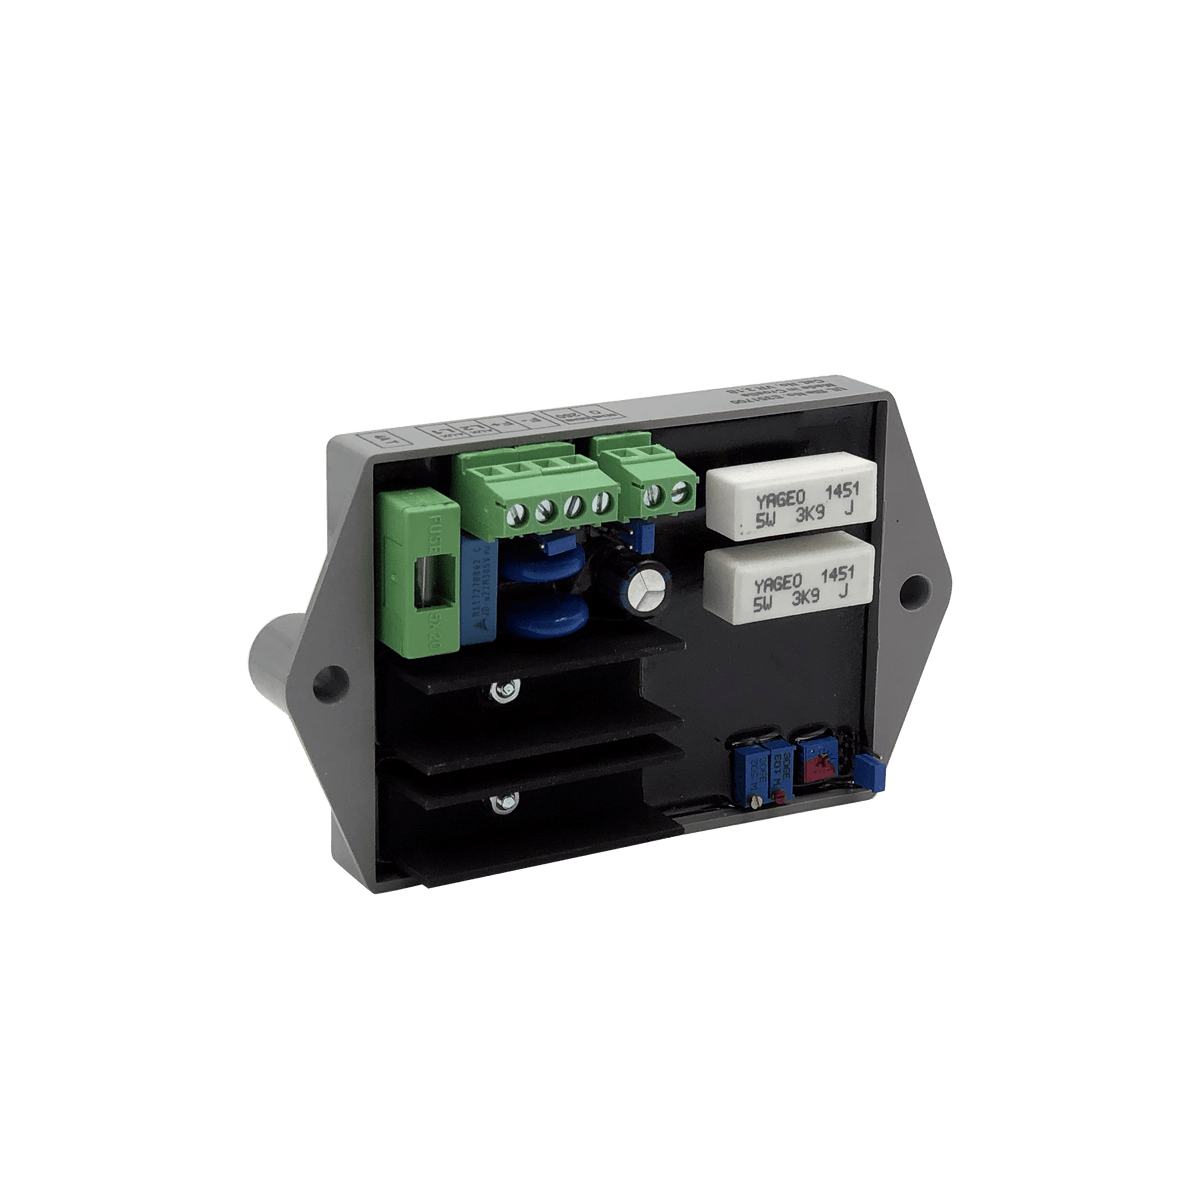 Voltage Regulator 3.1B for Mobile Generator